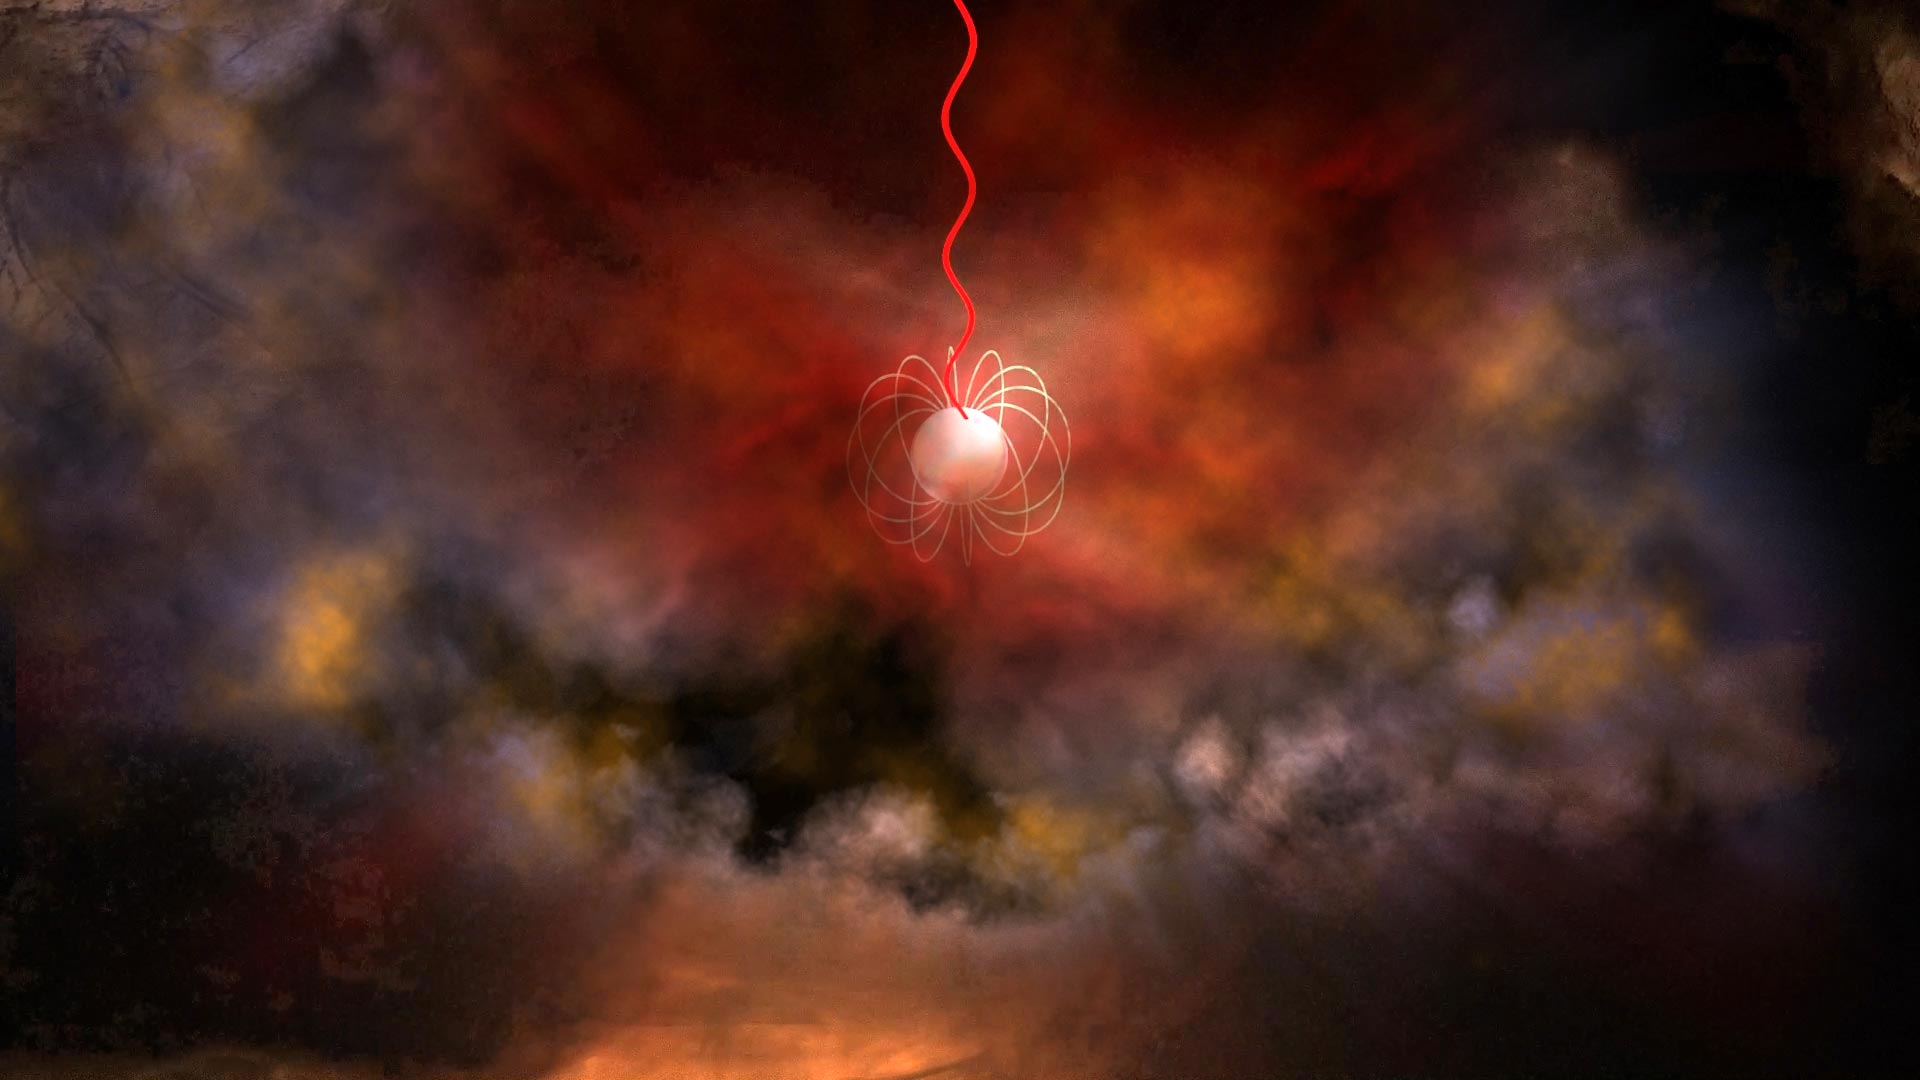 射電爆信號的一種可能來源是具有強磁場的中子星。圖為這樣的中子星的概念圖，其中朝上方發出的紅色波動代表射電爆信號。（NRAO/AUI/NSF/Bill Saxton）